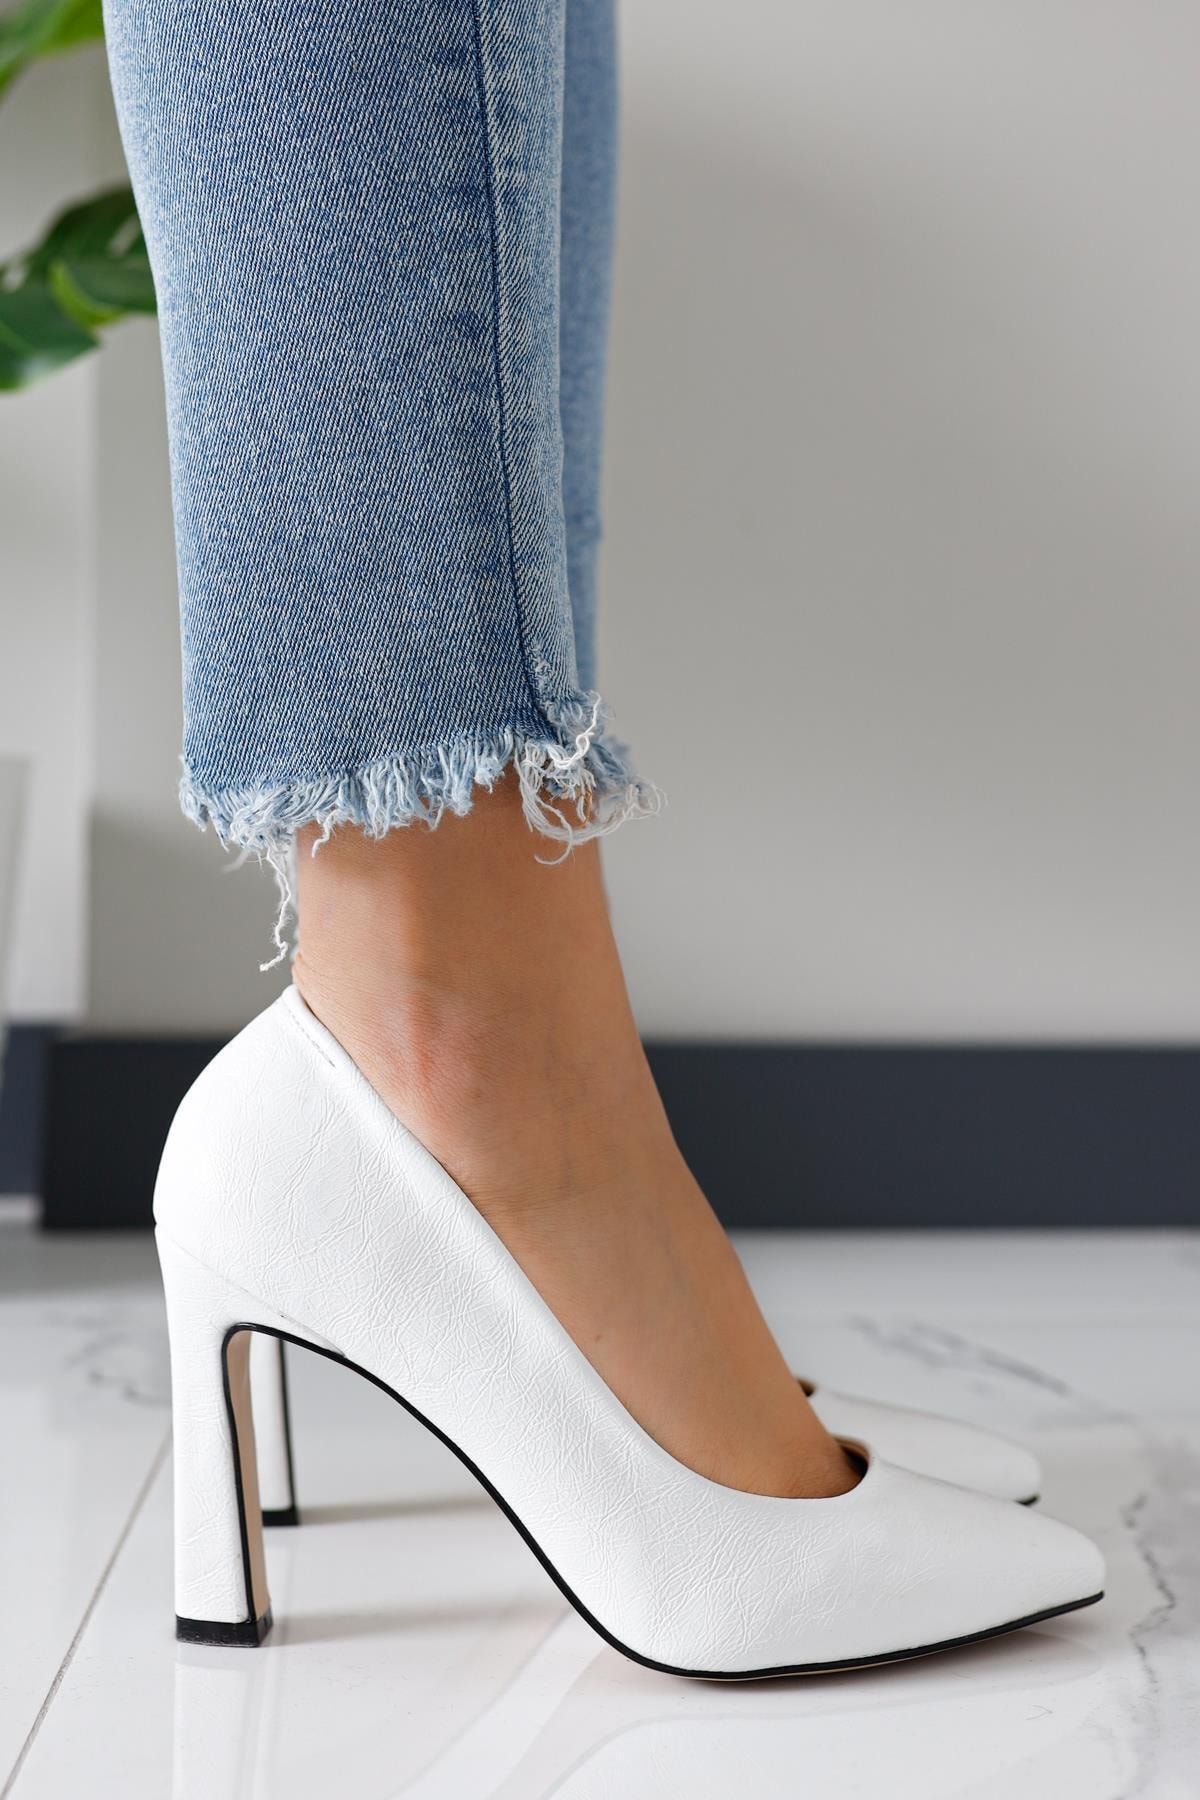 Limoya Joan Beyaz Kırışık Deri Rugan Stiletto Ayakkabı